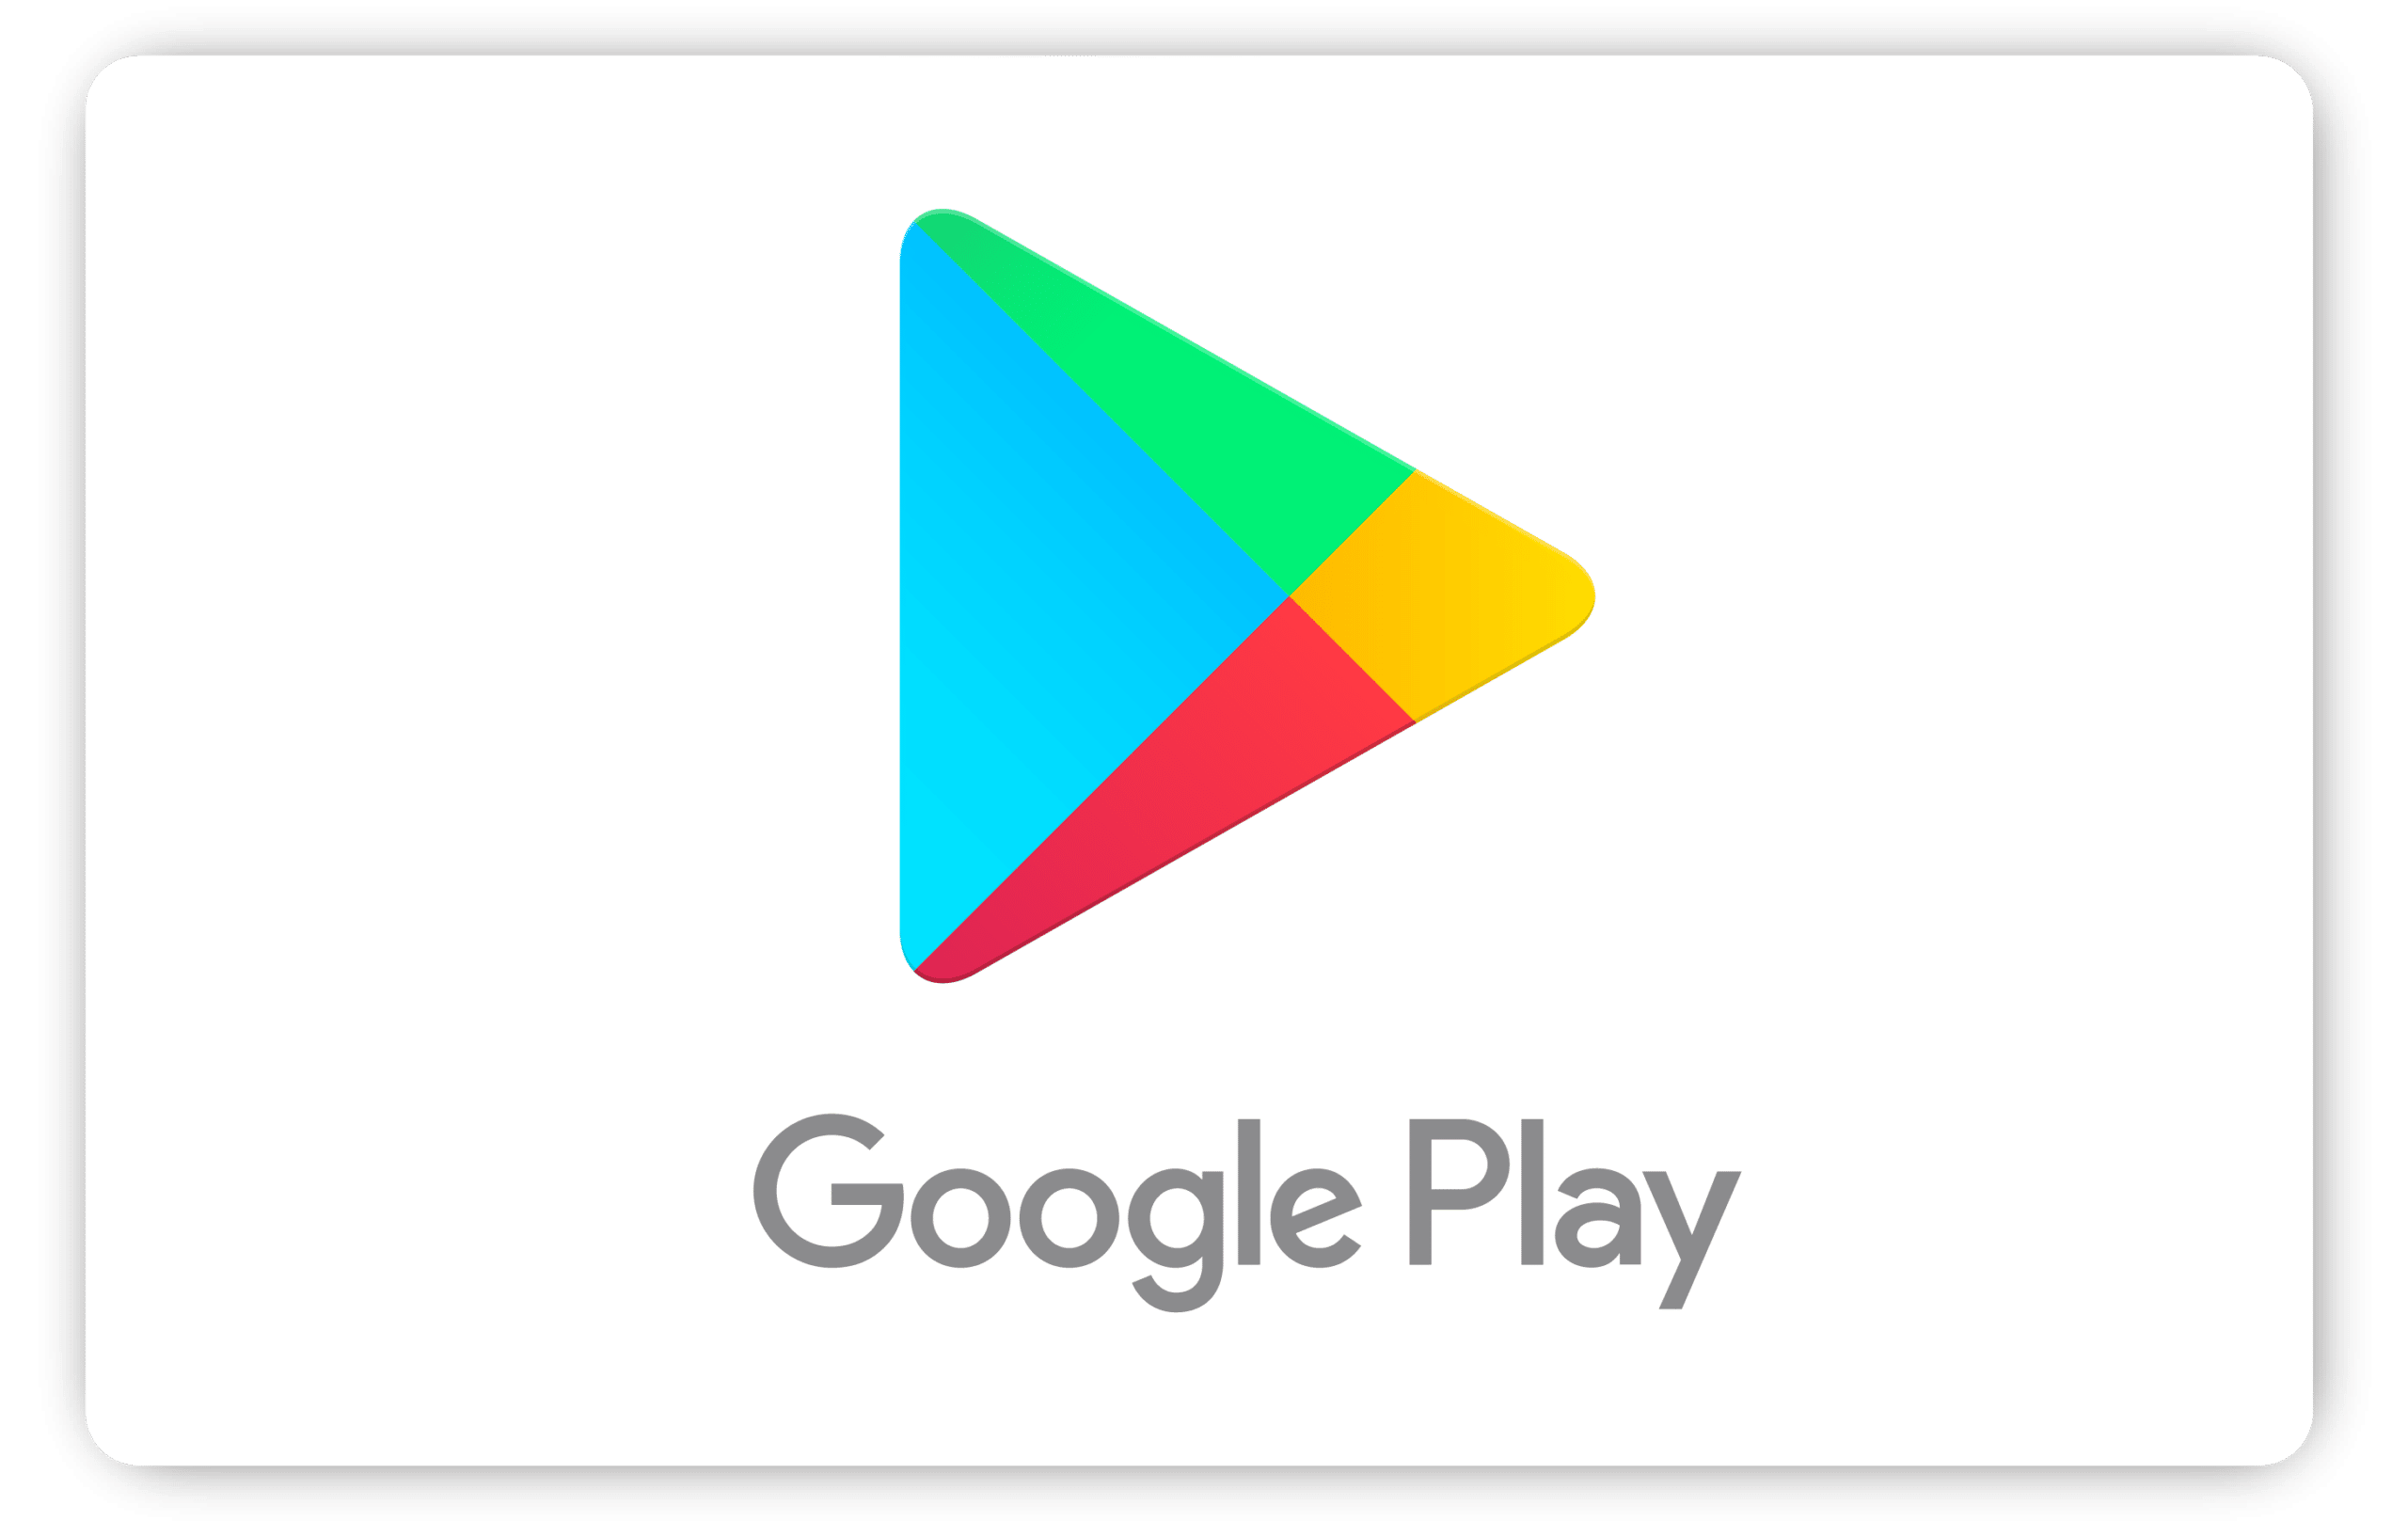 Comment obtenir des crédits gratuits sur Google Play ?